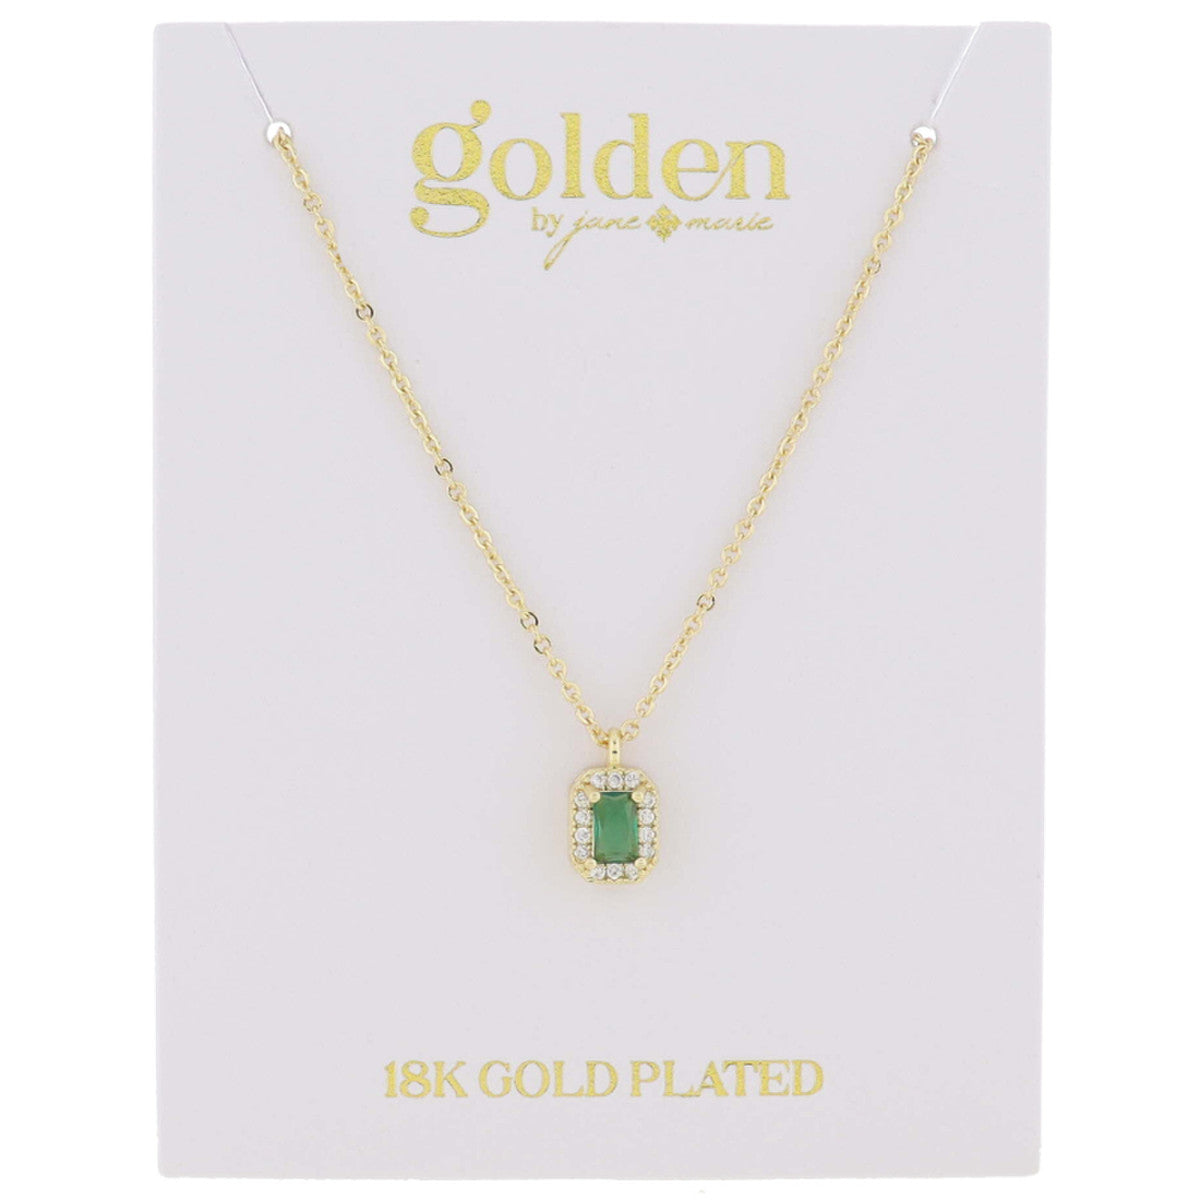 Golden- Birthstone Necklace